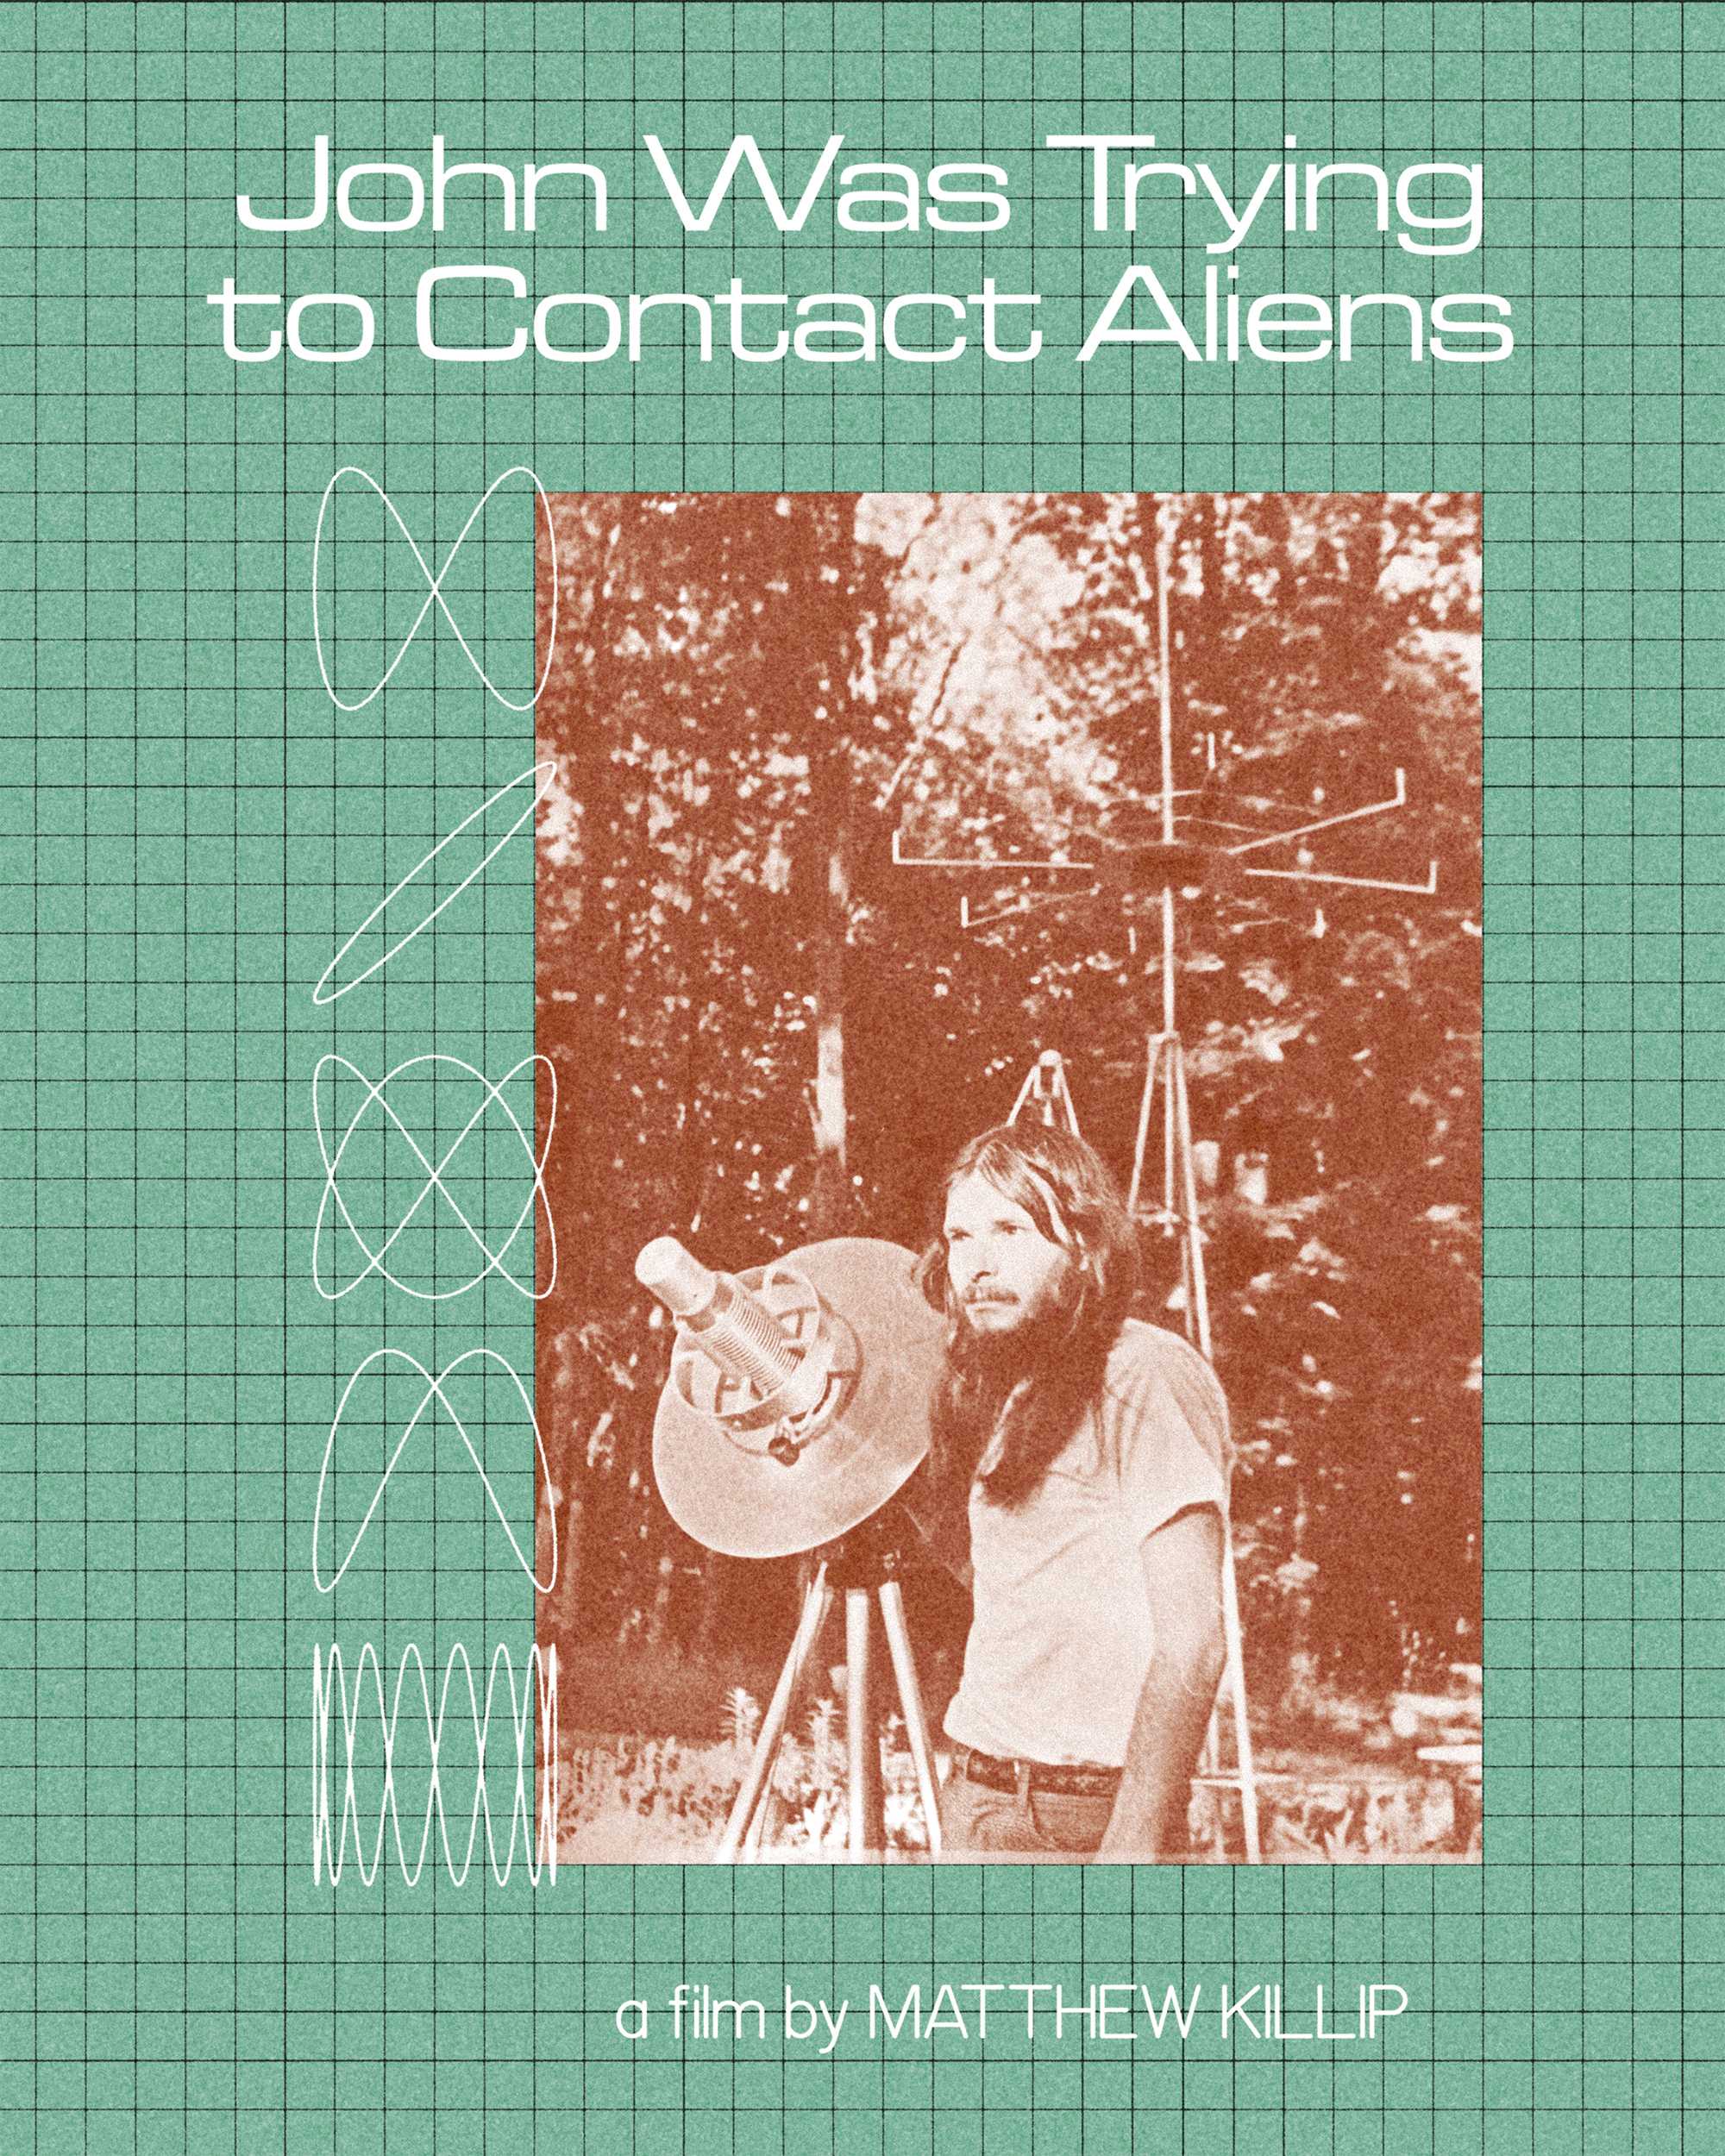 John từng tìm cách liên lạc người ngoài hành tinh - John was trying to contact aliens